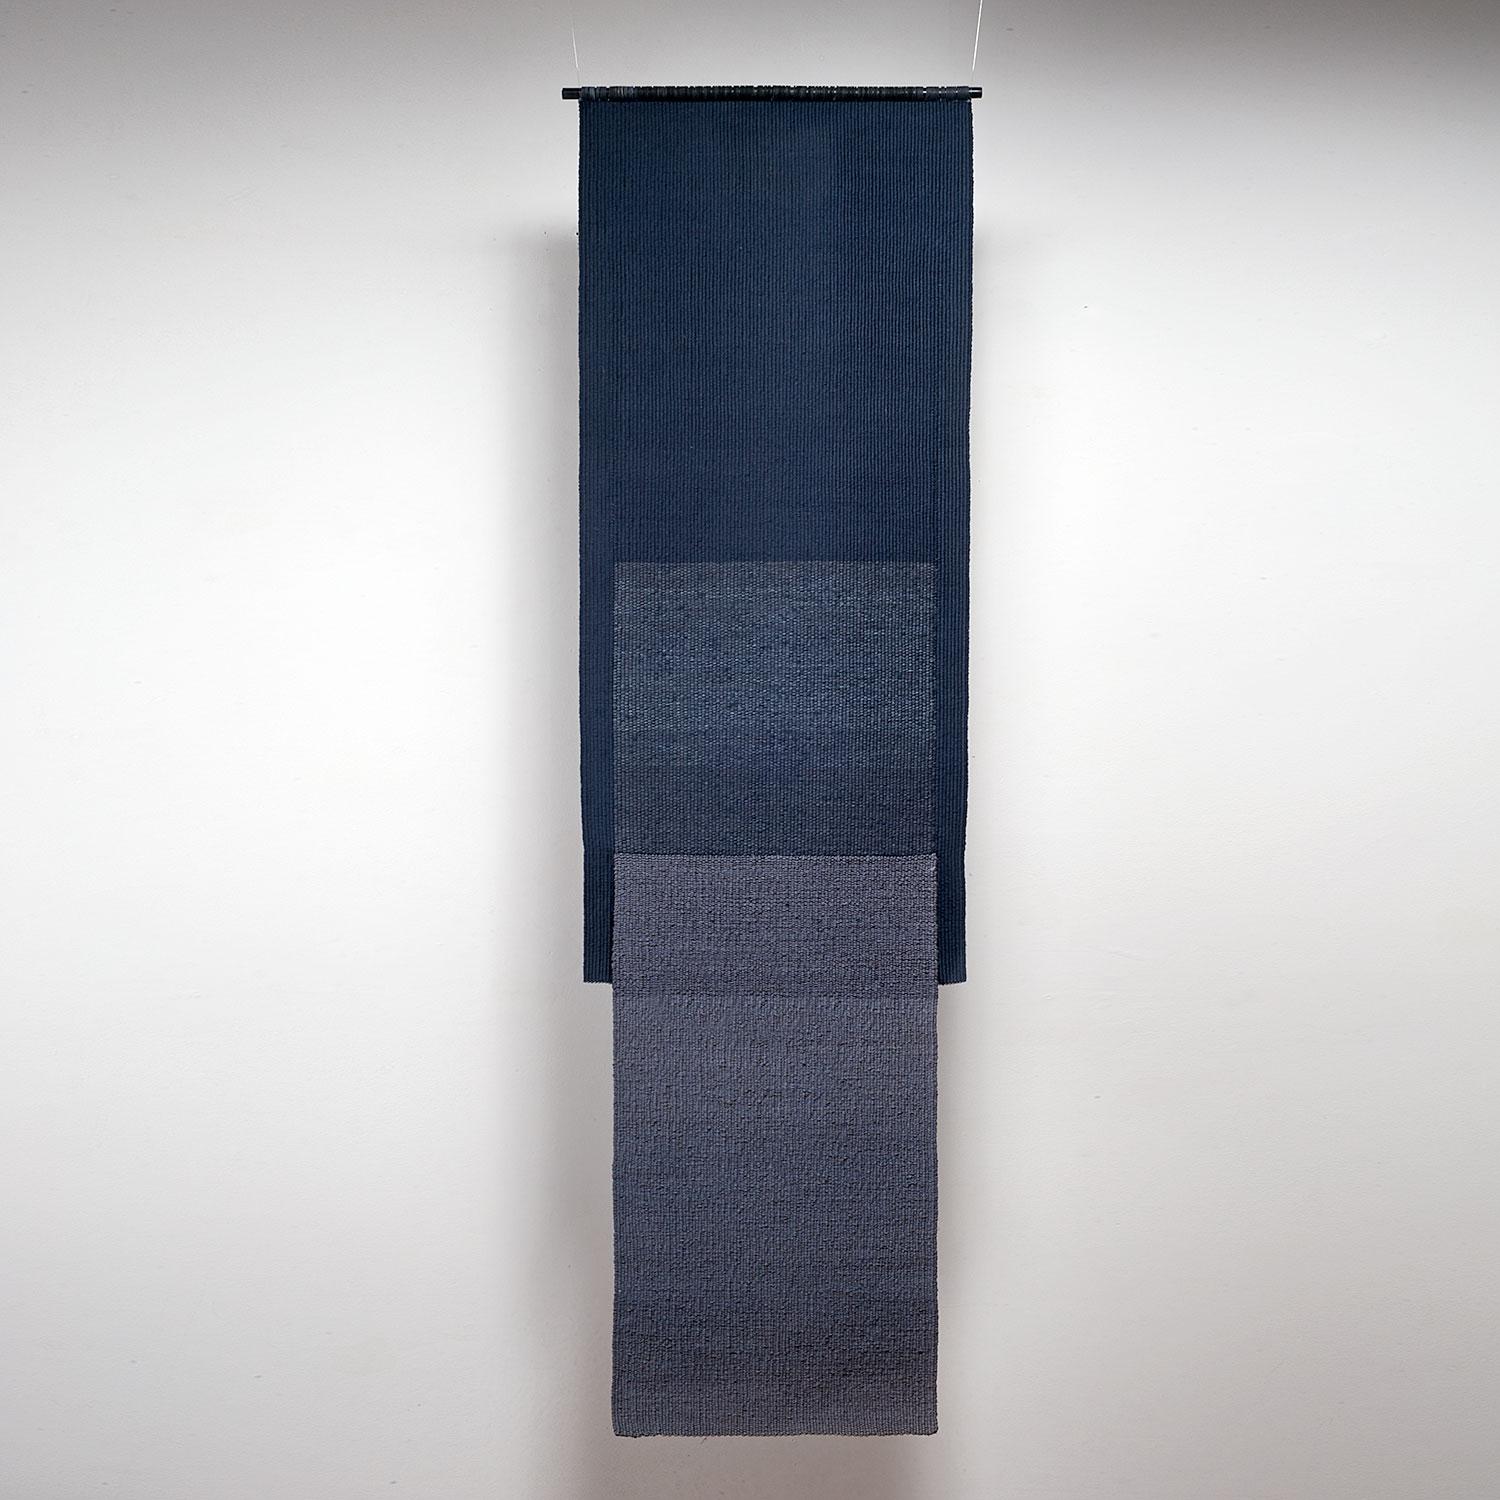 Azul, Carolina Yrarrázaval, handwoven textile